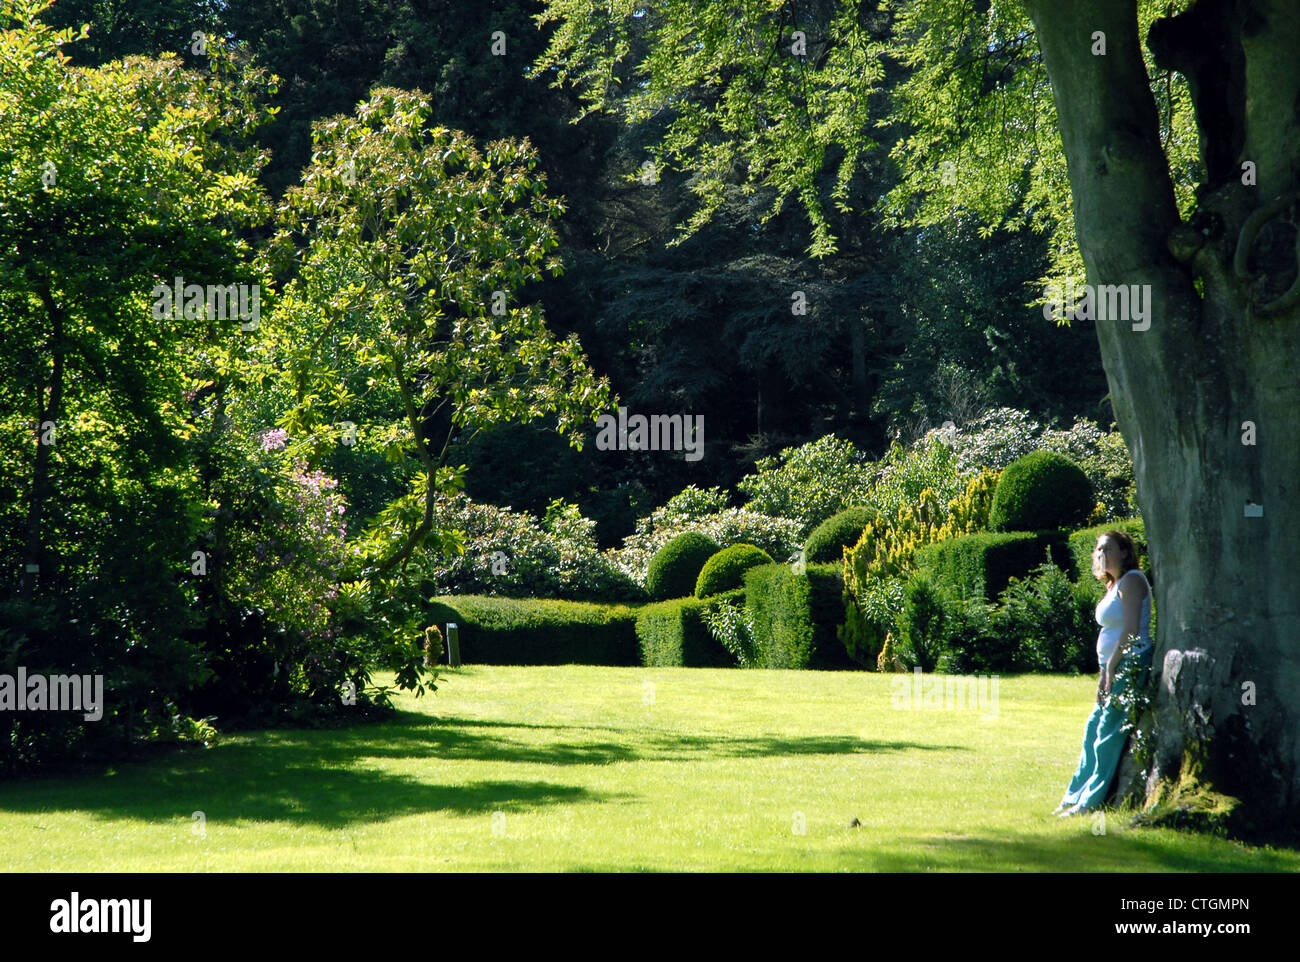 Une femme jouit d'un cadre magnifique à l'Hergest Croft Gardens à Kington, Herefordshire. Banque D'Images